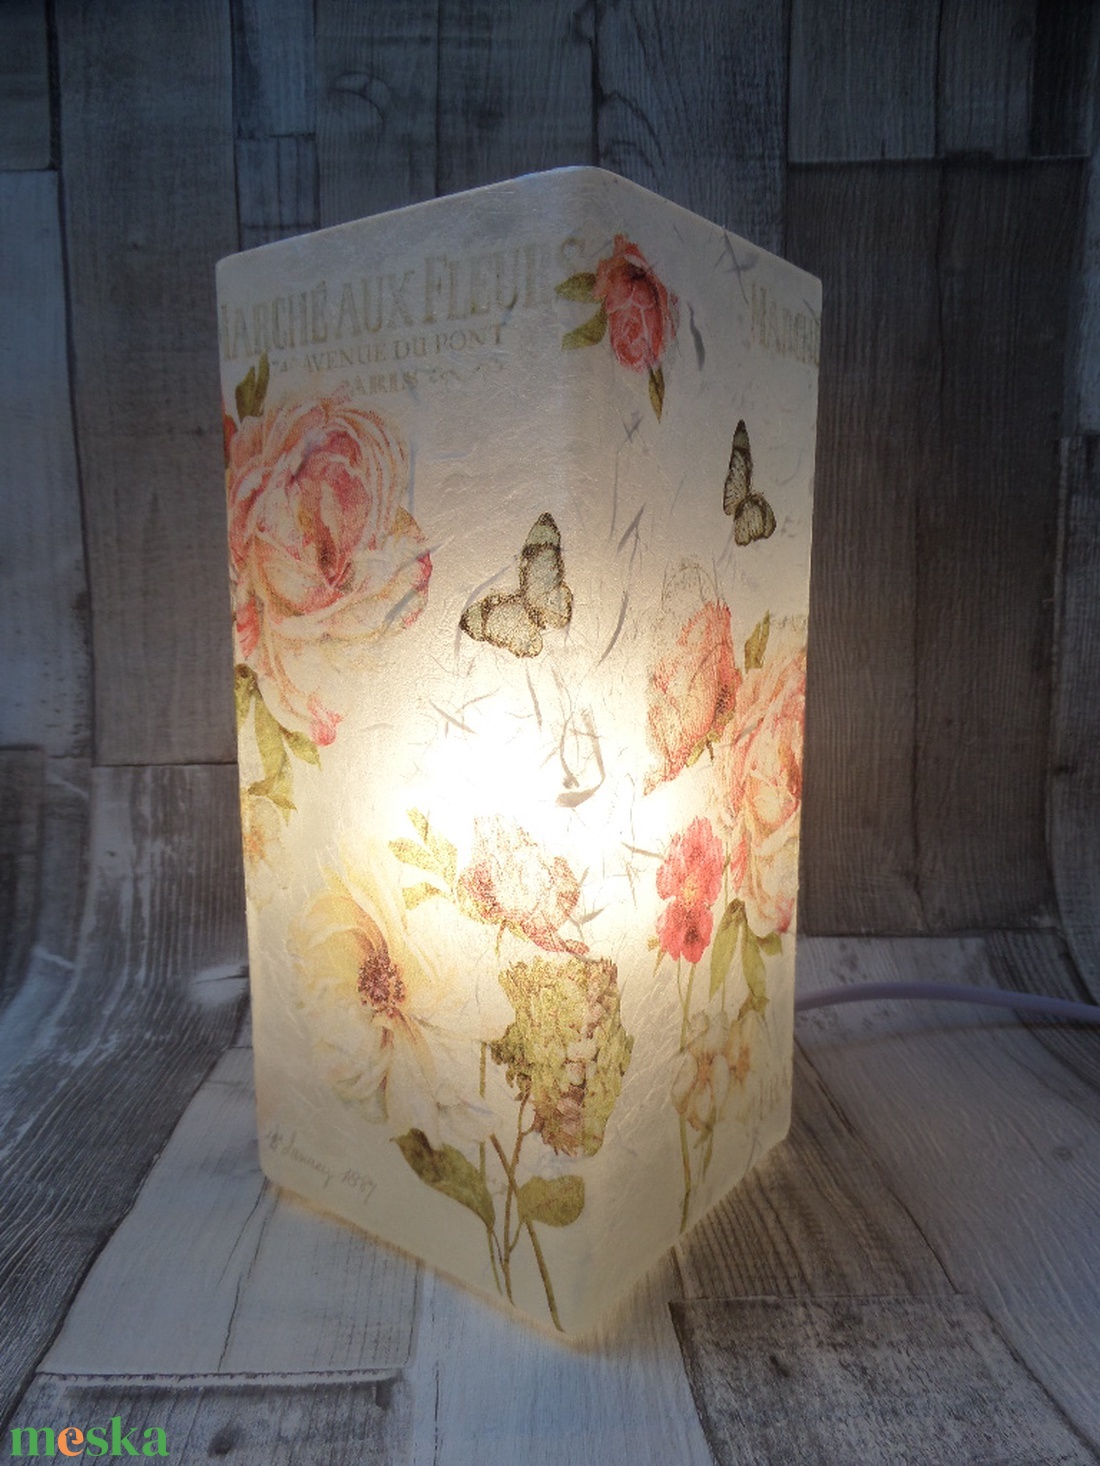 Asztali lámpa,éjjeli lámpa,hangulatlámpa rózsás mintával - otthon & lakás - lámpa - hangulatlámpa - Meska.hu